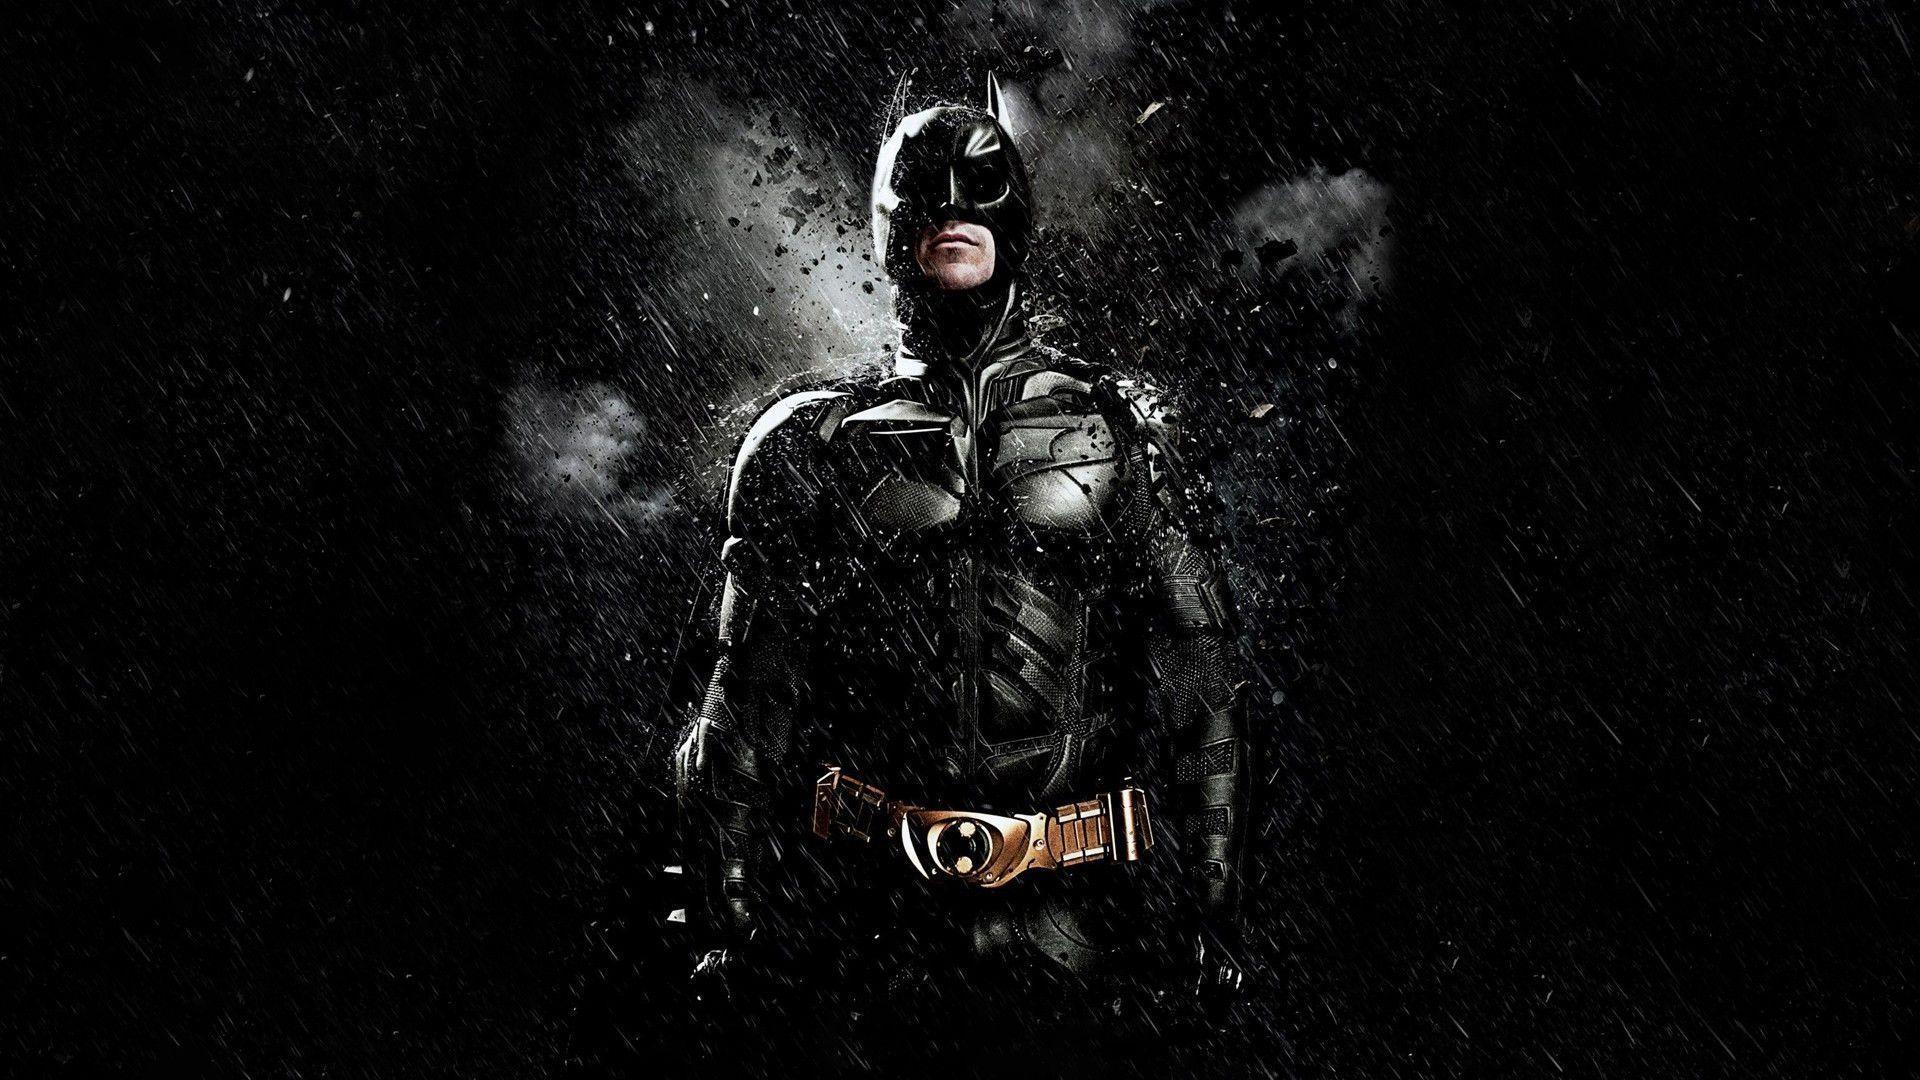 Dark Knight HD Wallpaper. Dark Knight Desktop Image. Cool